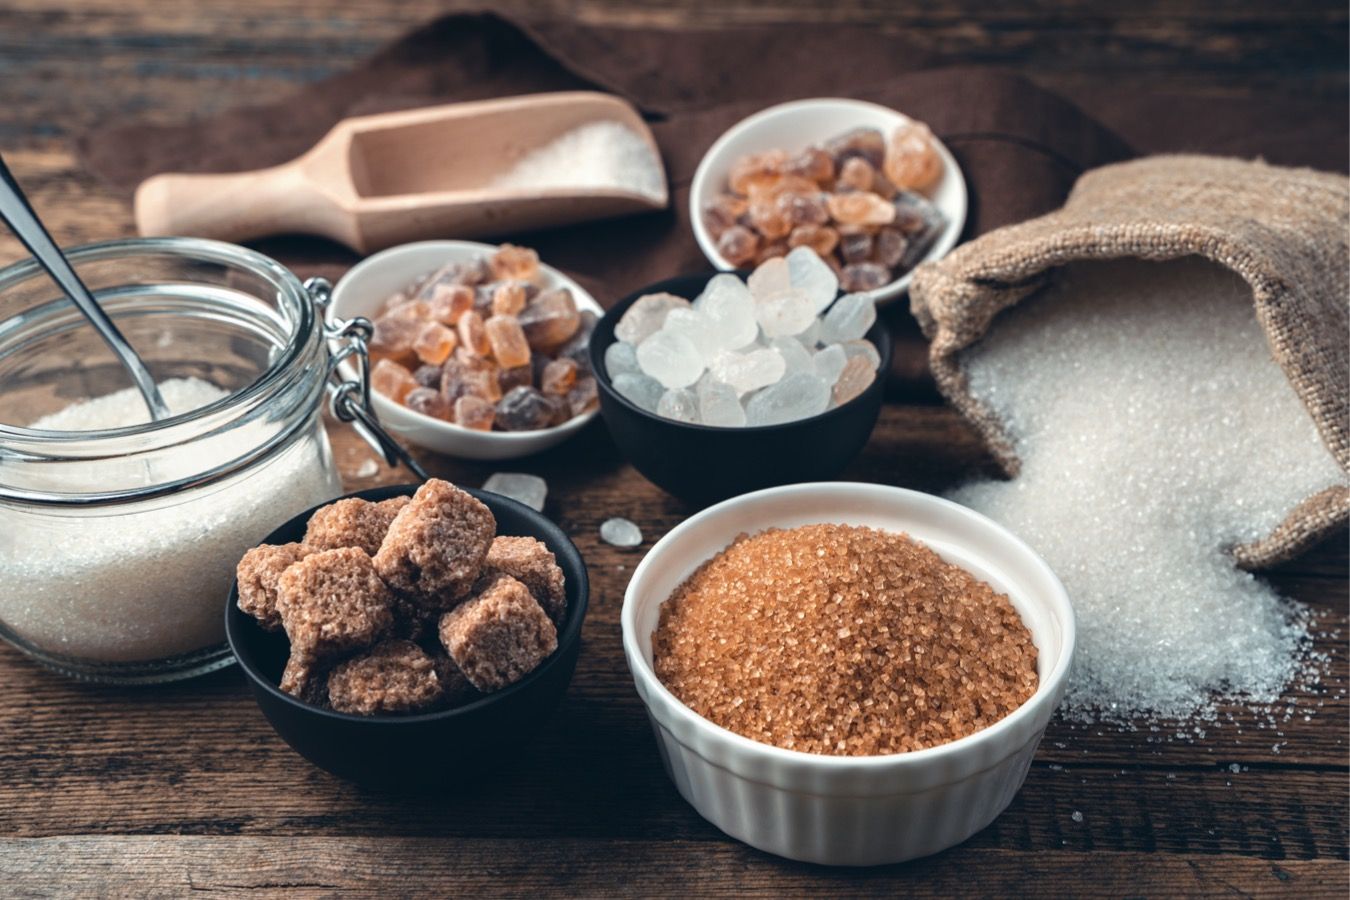 Сахар или сахарозаменитель — что лучше — плюсы и минусы - Чемпионат